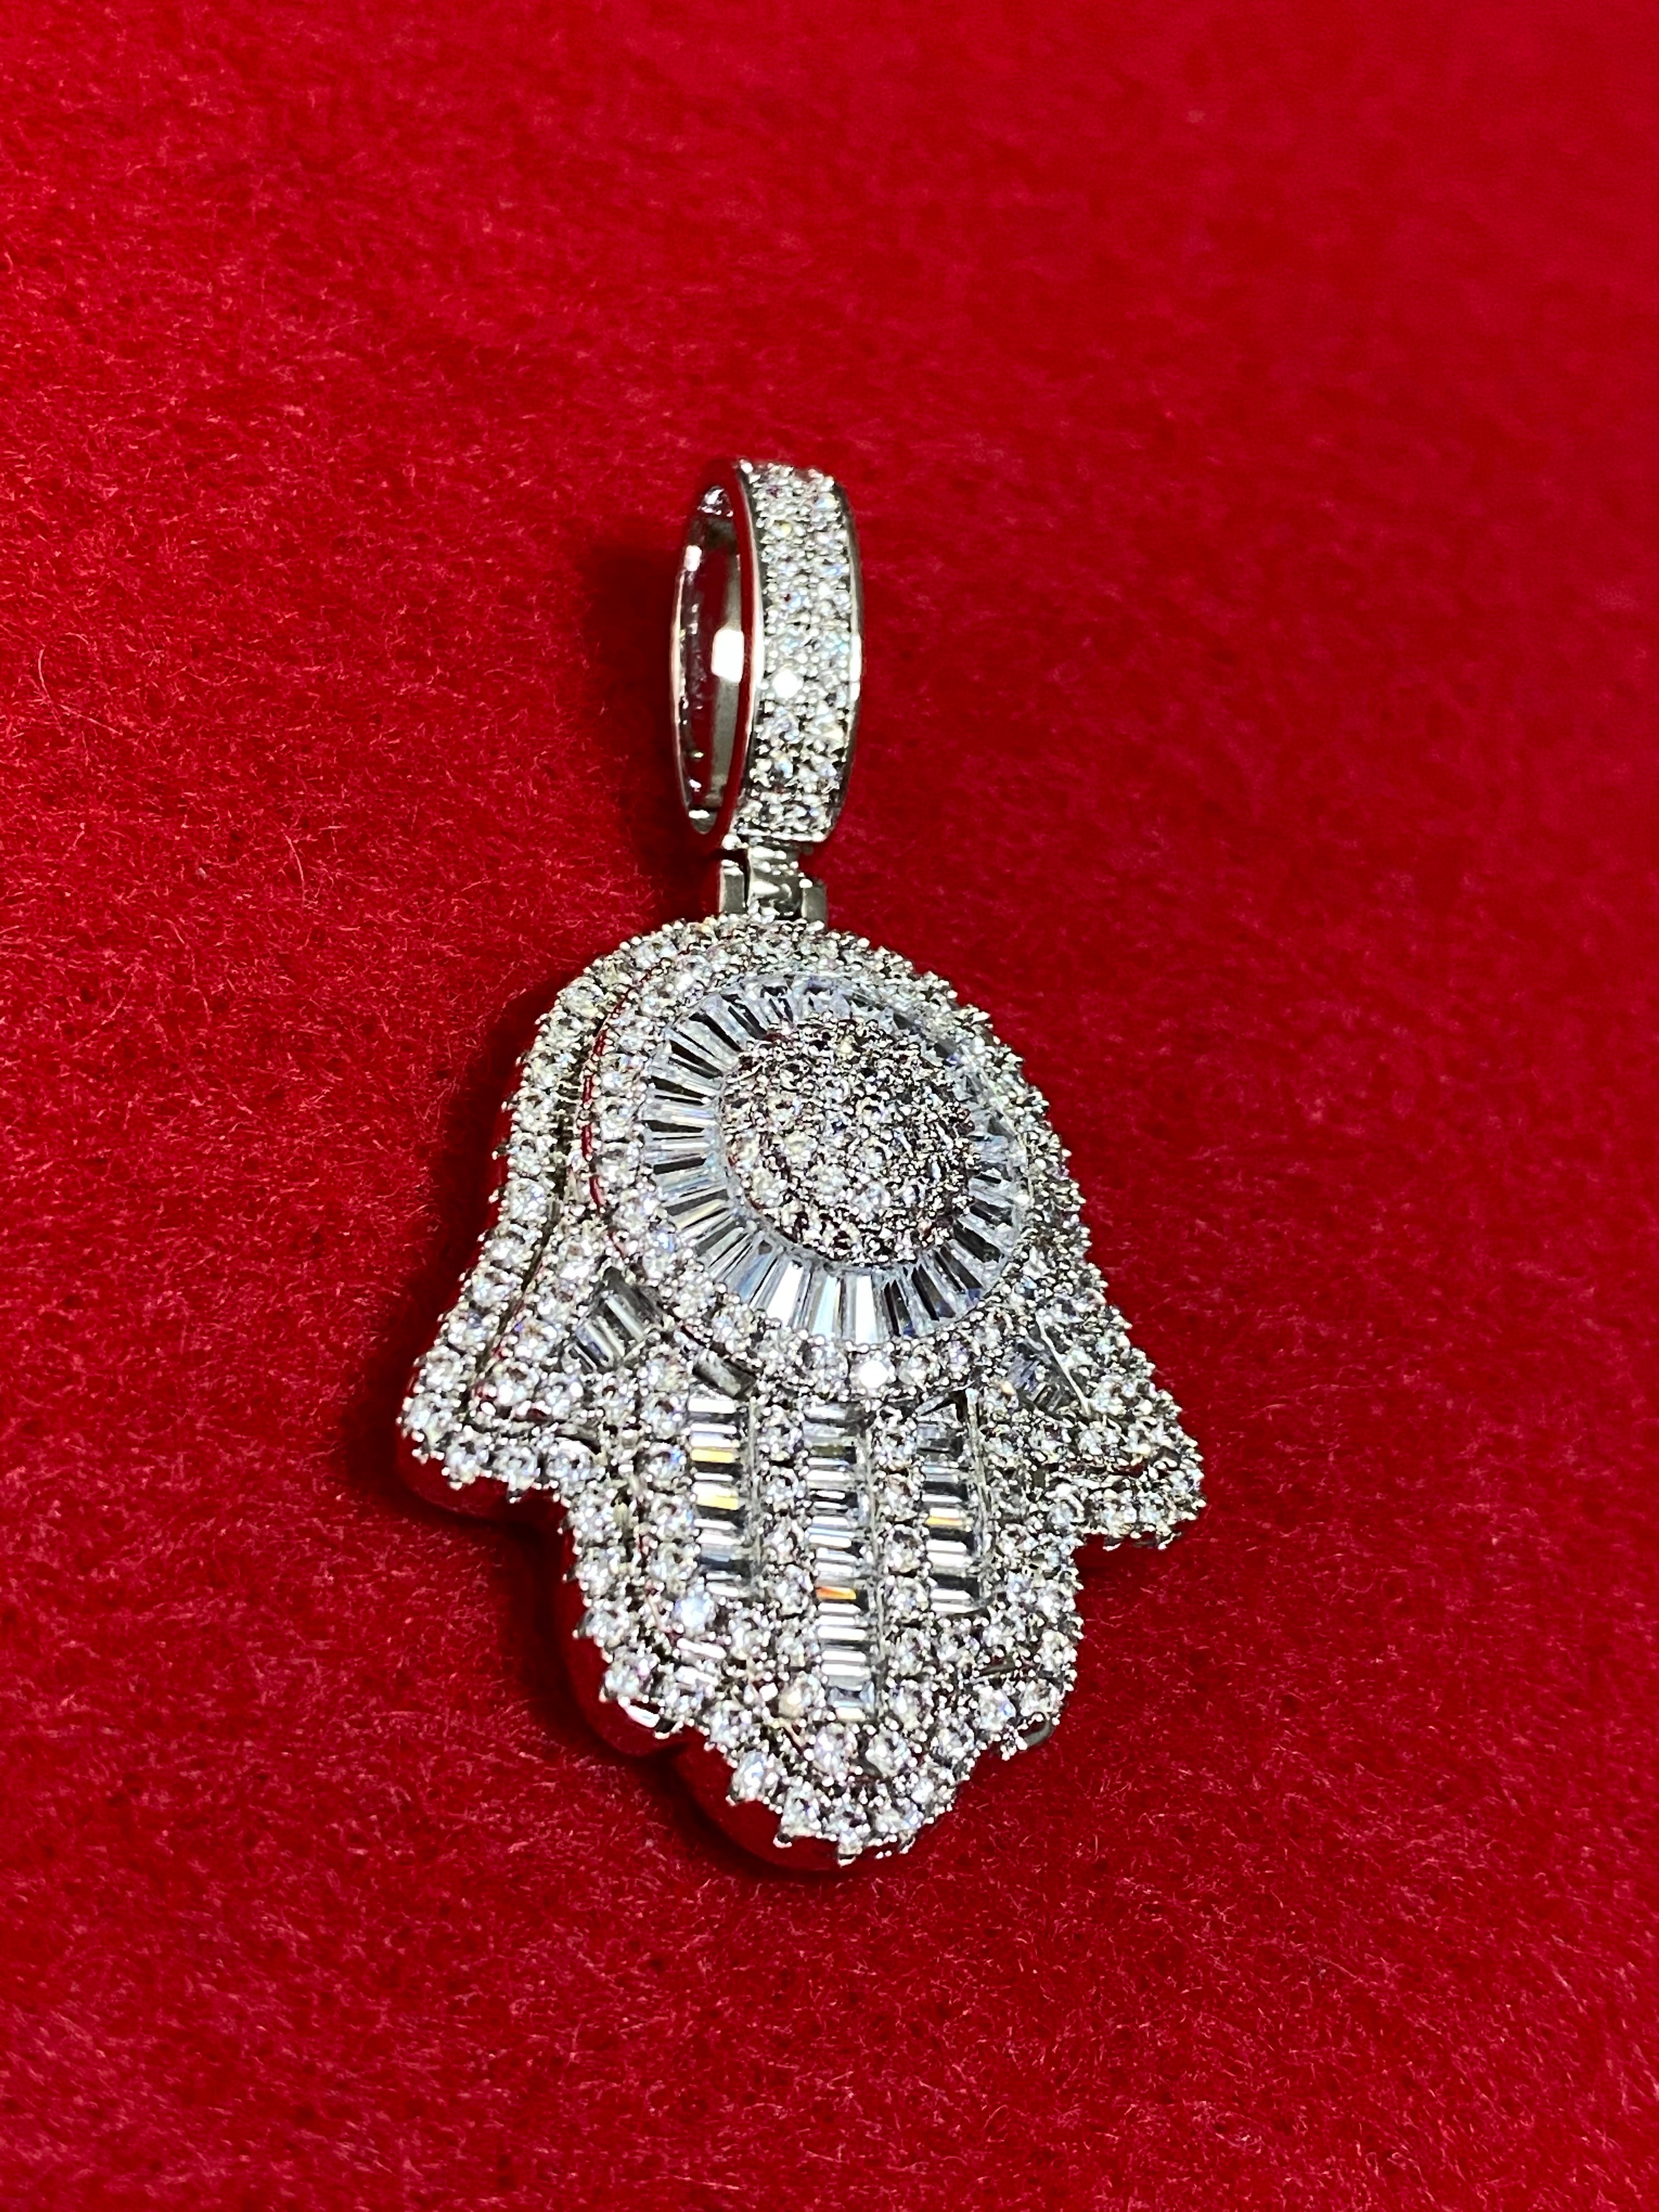 Hamsa pendant and chain